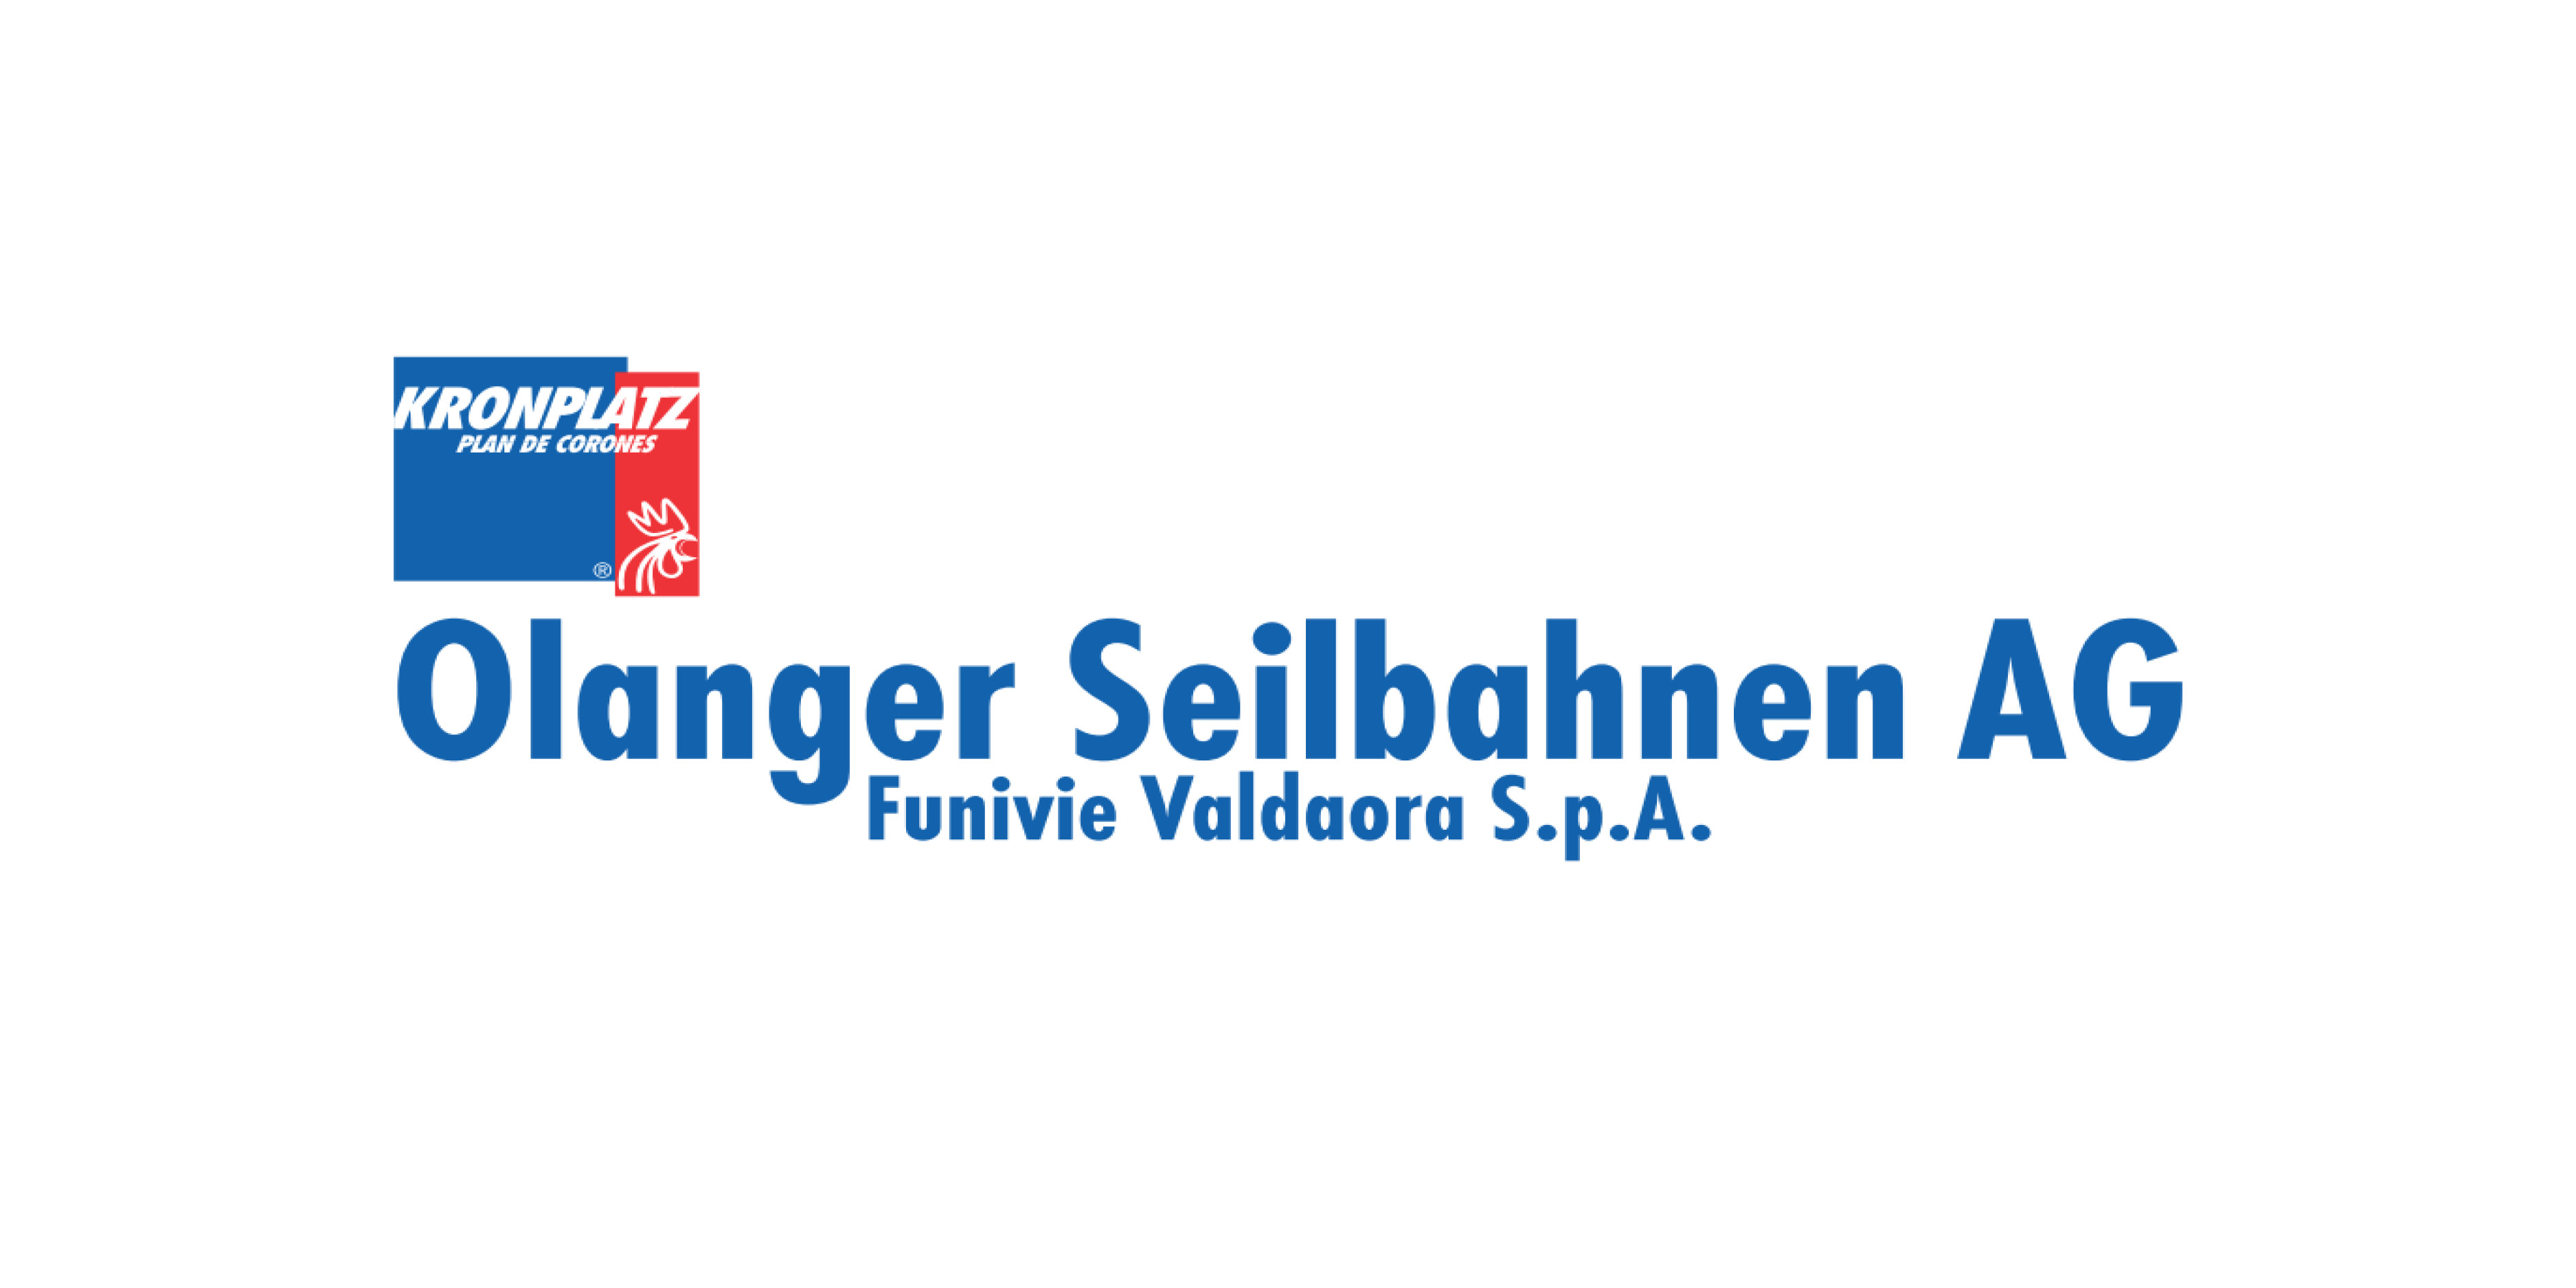 Olanger Seilbahnen AG